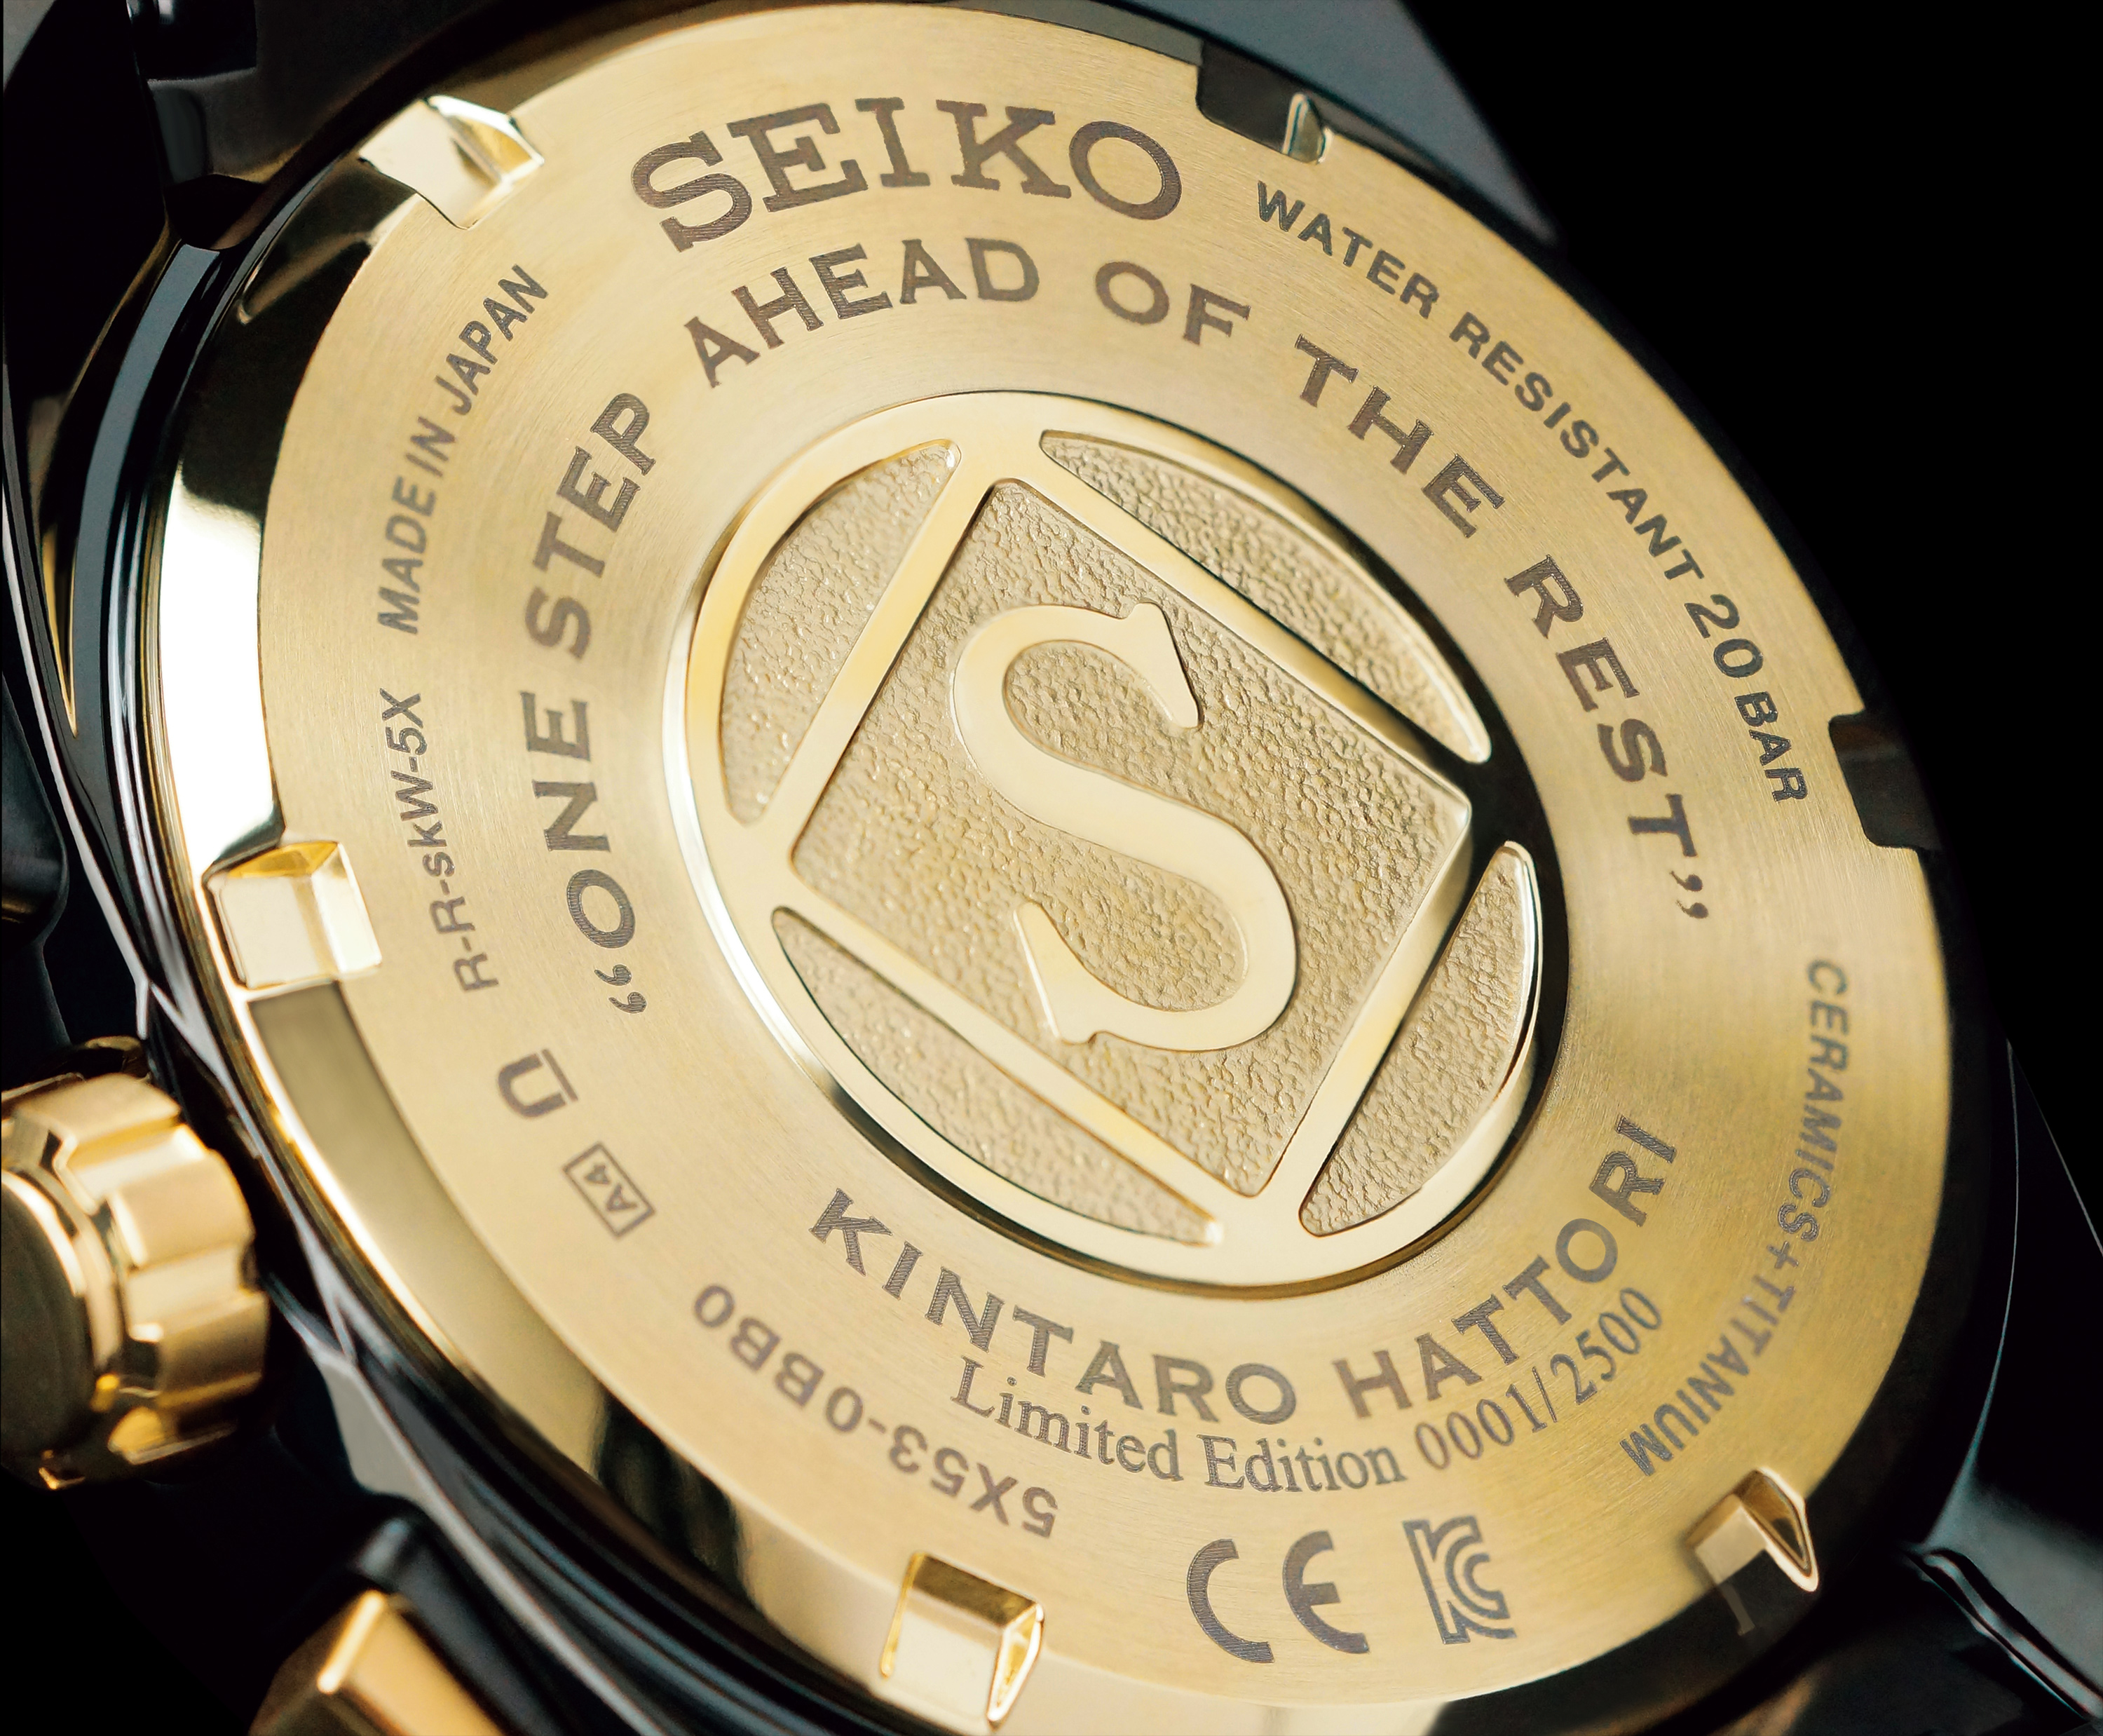 Kintaro's naam, het 'S' merkteken en zijn motto sieren het achterdeksel samen met het unieke serienummer van het horloge.